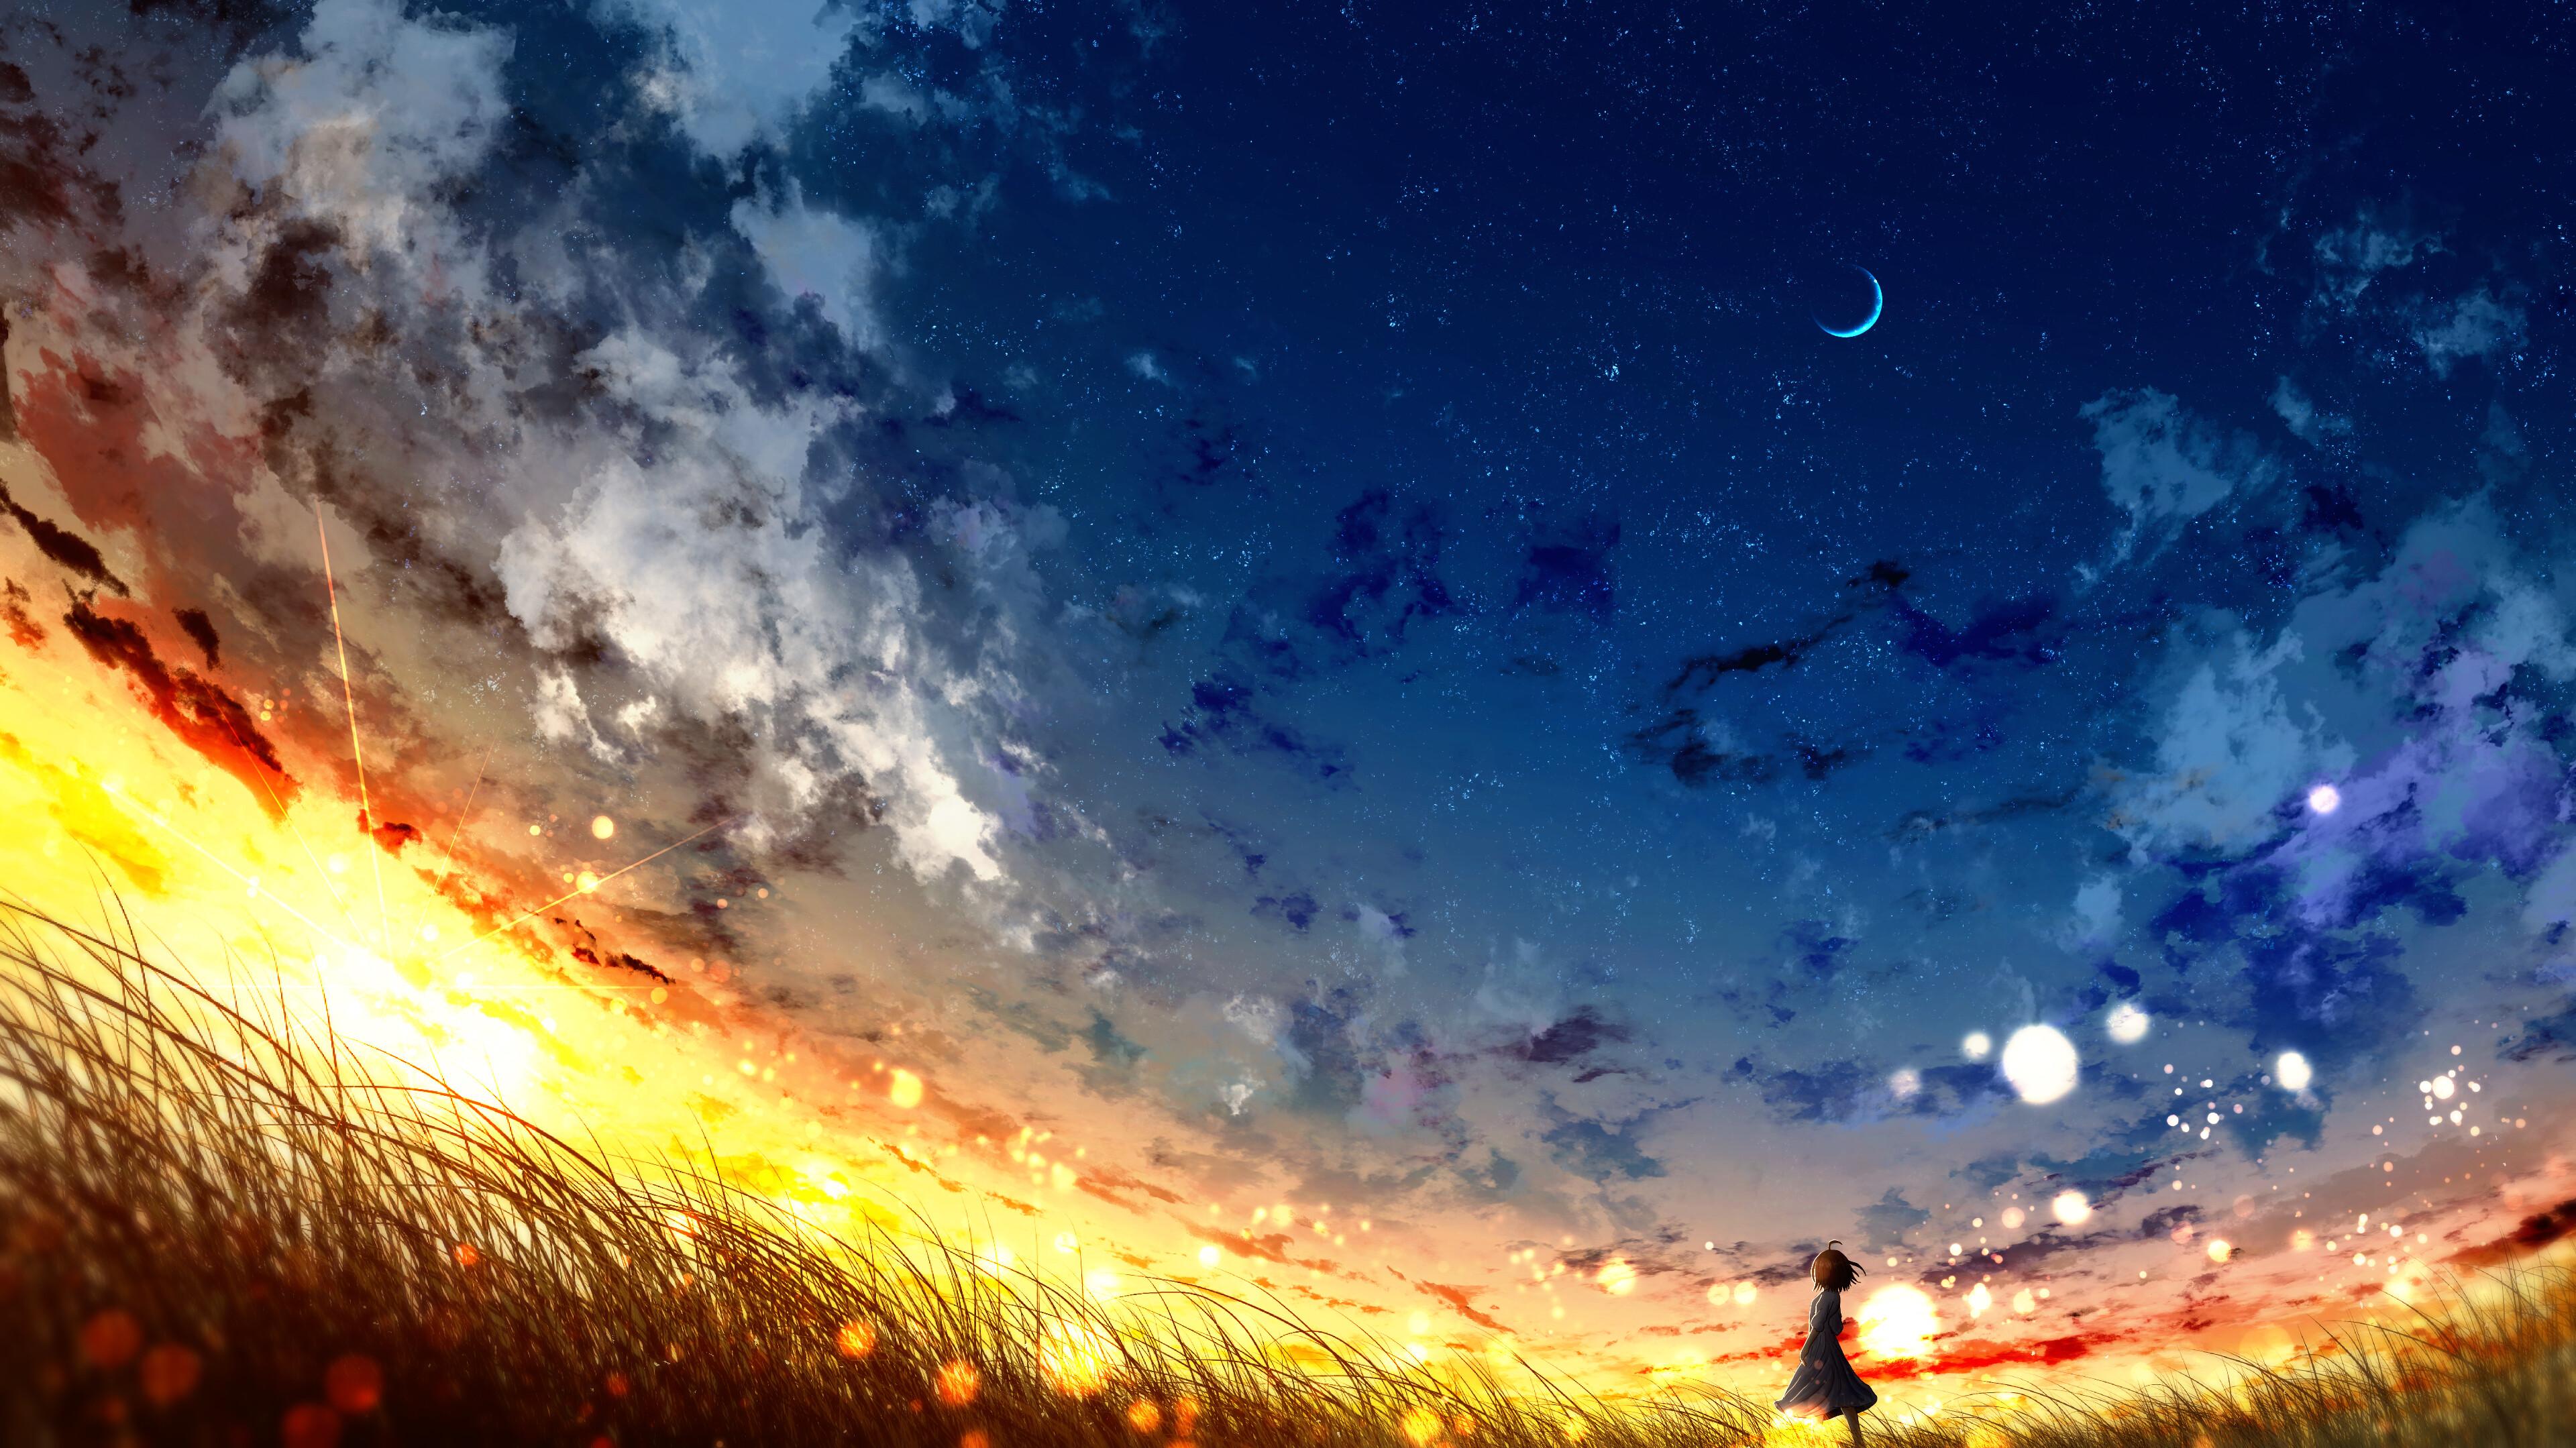 Sunset Sky Anime Scenery 4K Wallpaper